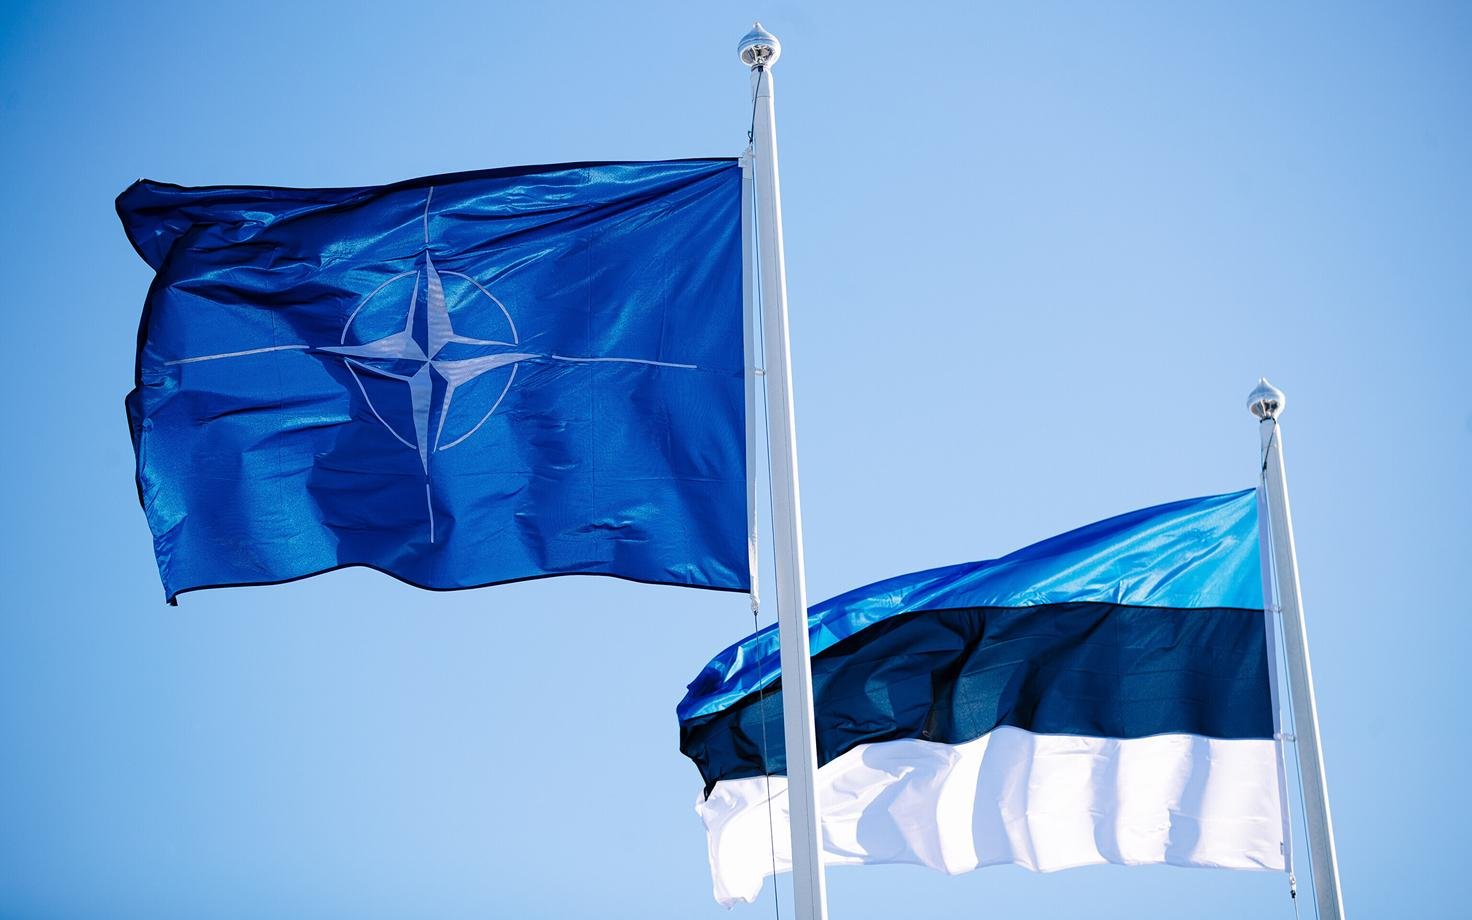 NATO ilə əməkdaşlıq Estoniyanın təhlükəsizliyinin əsasını təşkil edir - Baş nazir